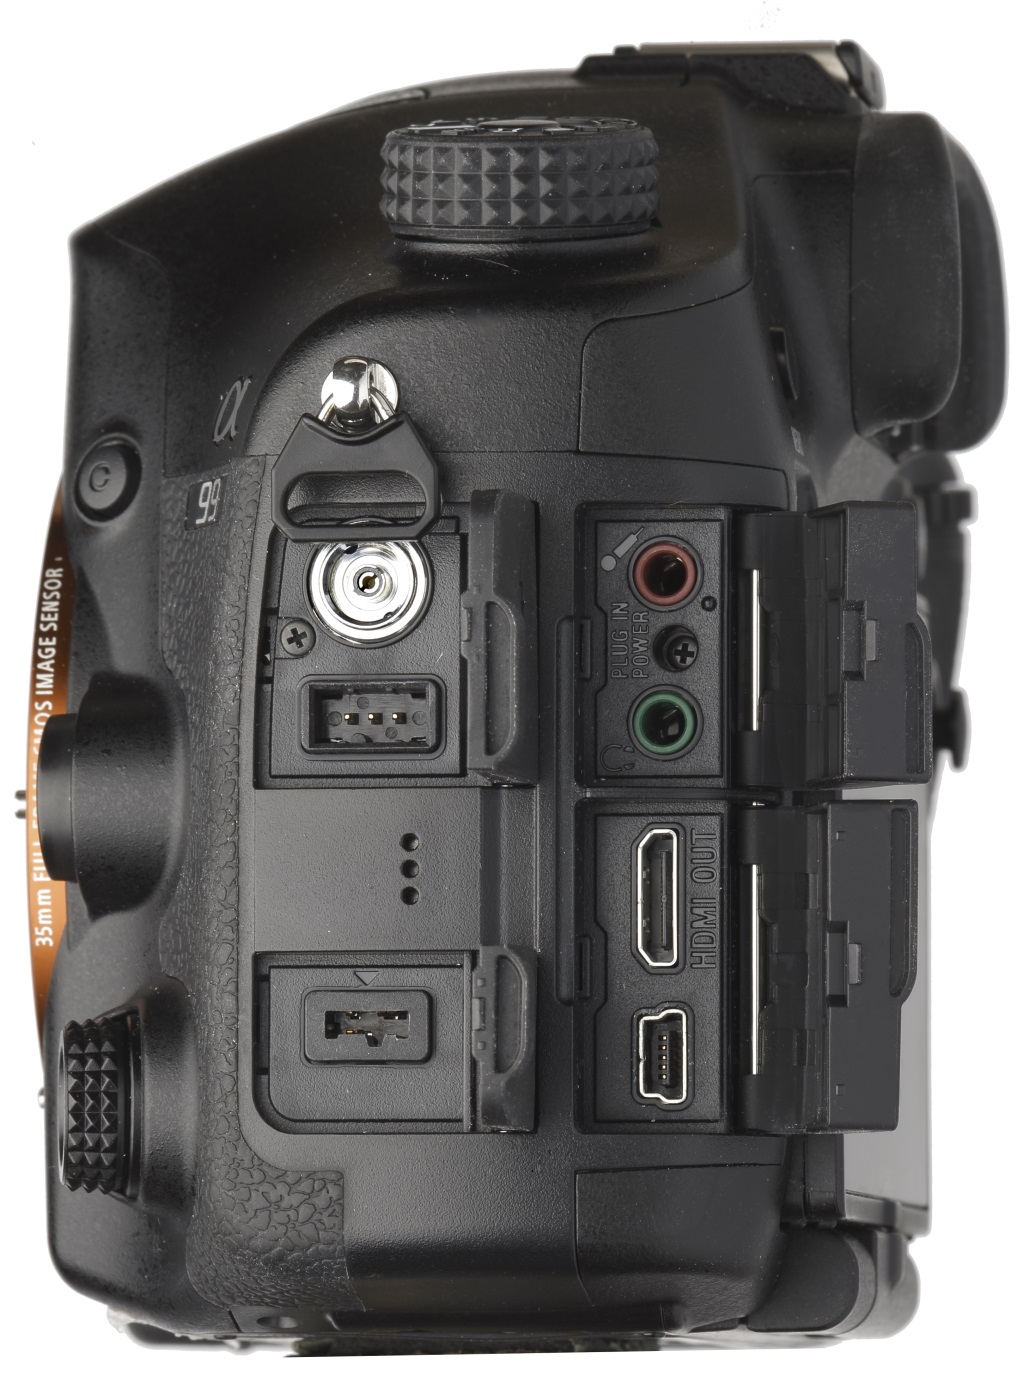 Тест зеркальный фотокамеры Sony SLT-A88 - интерфейс